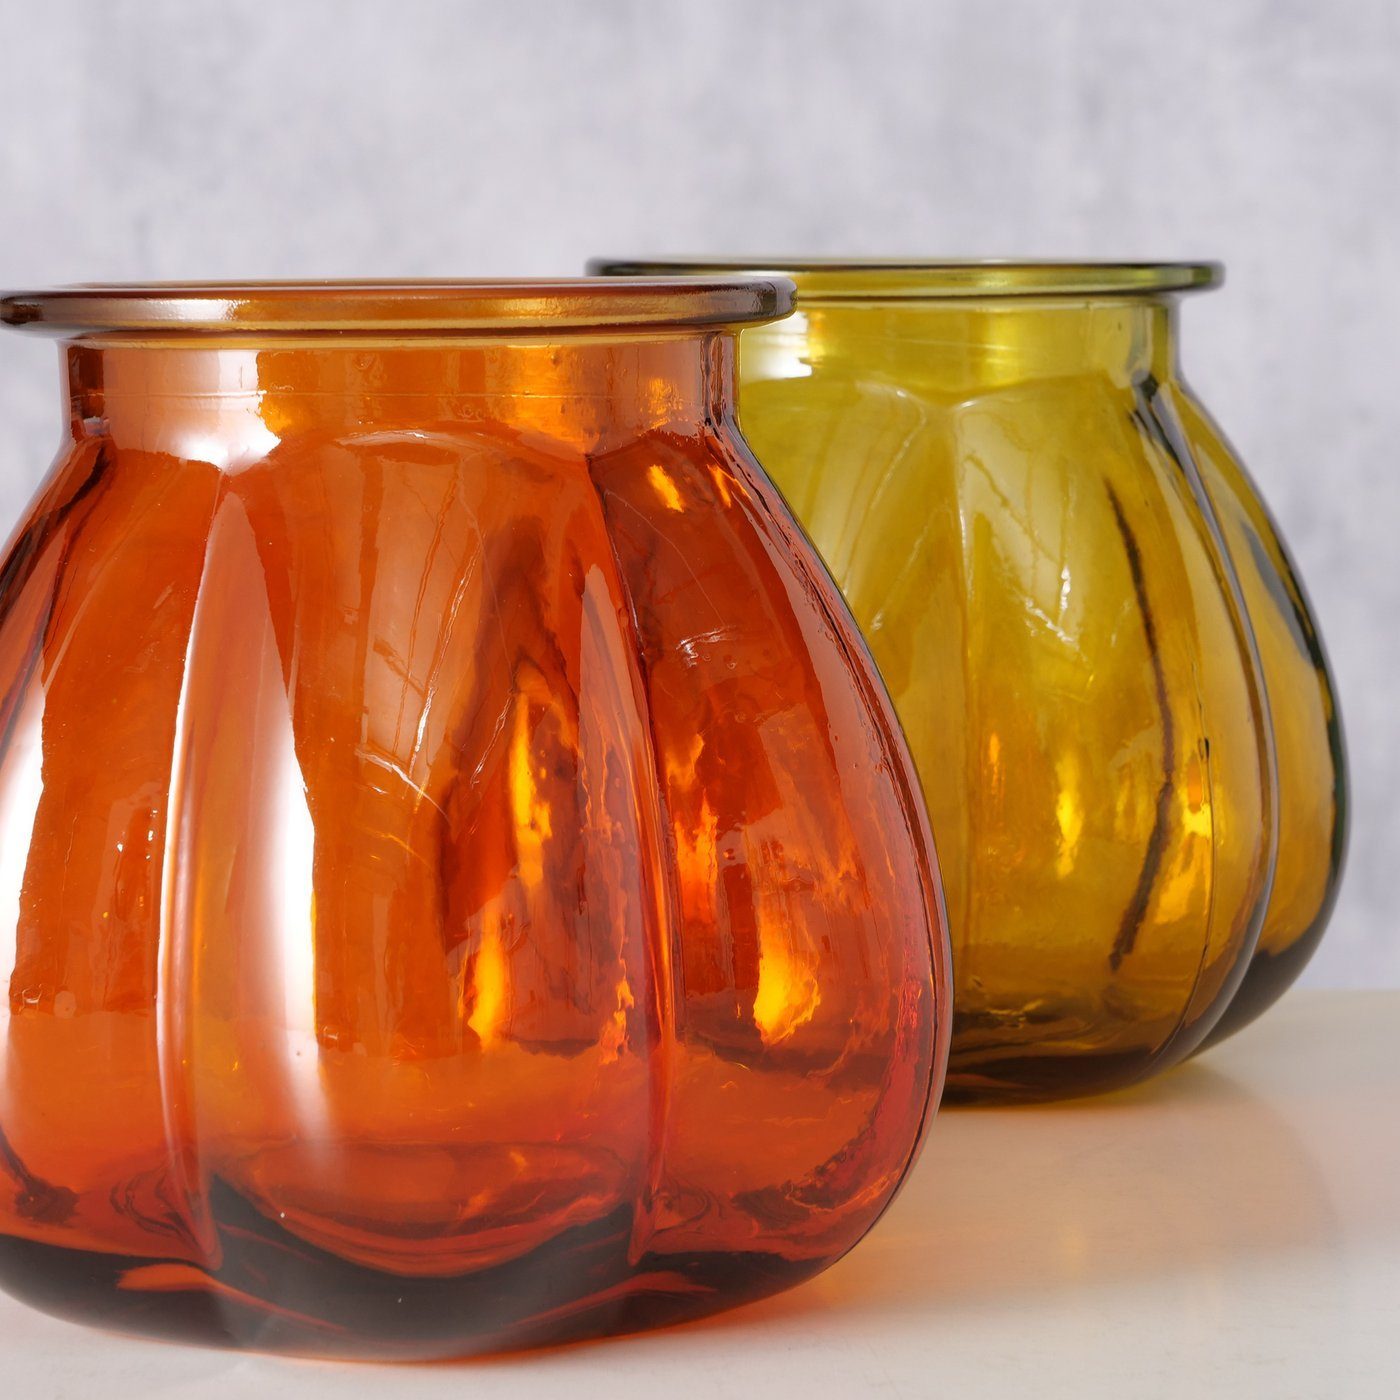 BOLTZE Dekovase 2er Set "Tangerine" aus Glas in gelb/orange, Vase Blumenvase | Dekovasen